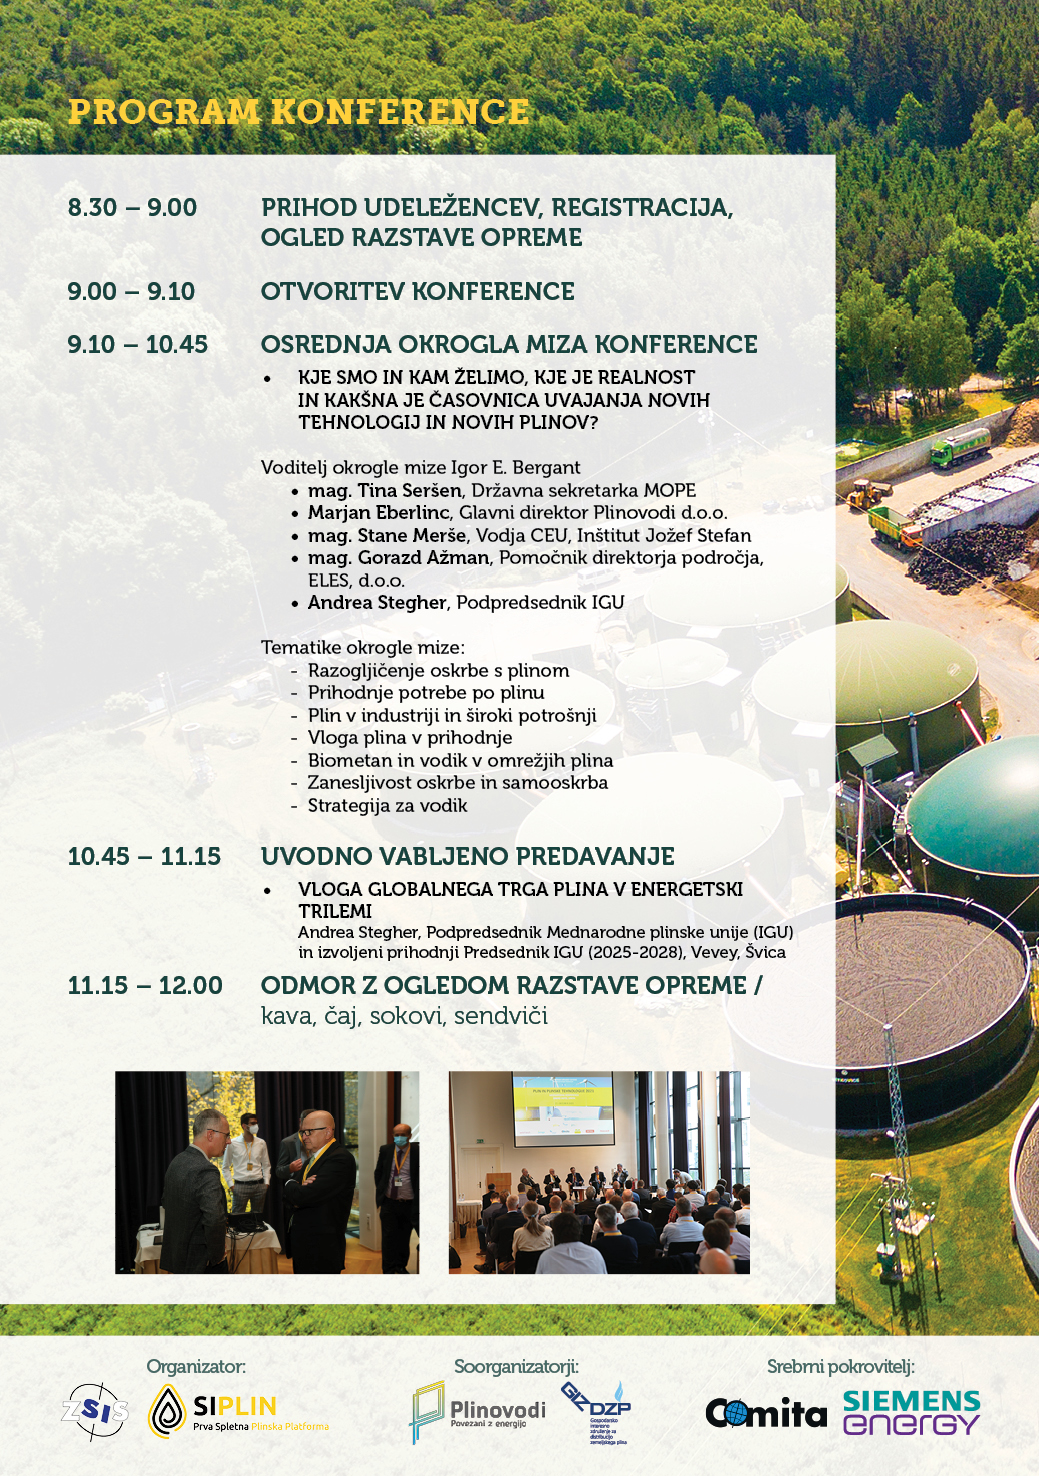 Program - Konferenca 2023 - Prihodnost plina in plinksih tehnologij / vodik